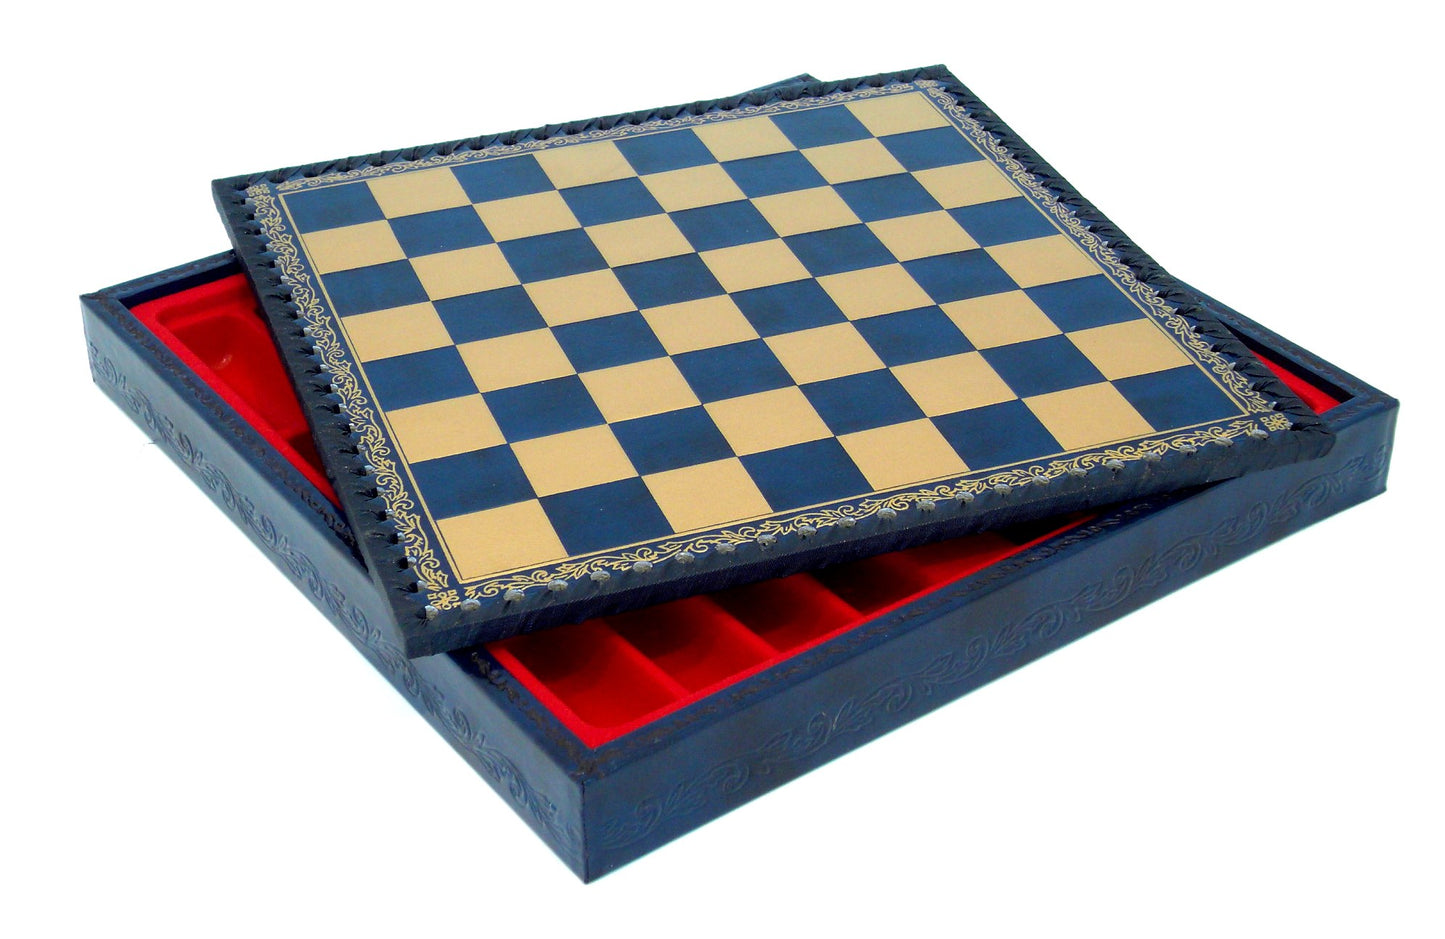 Schackbräde med förvaring, bräde för schack och damspel 28 x 28 cm